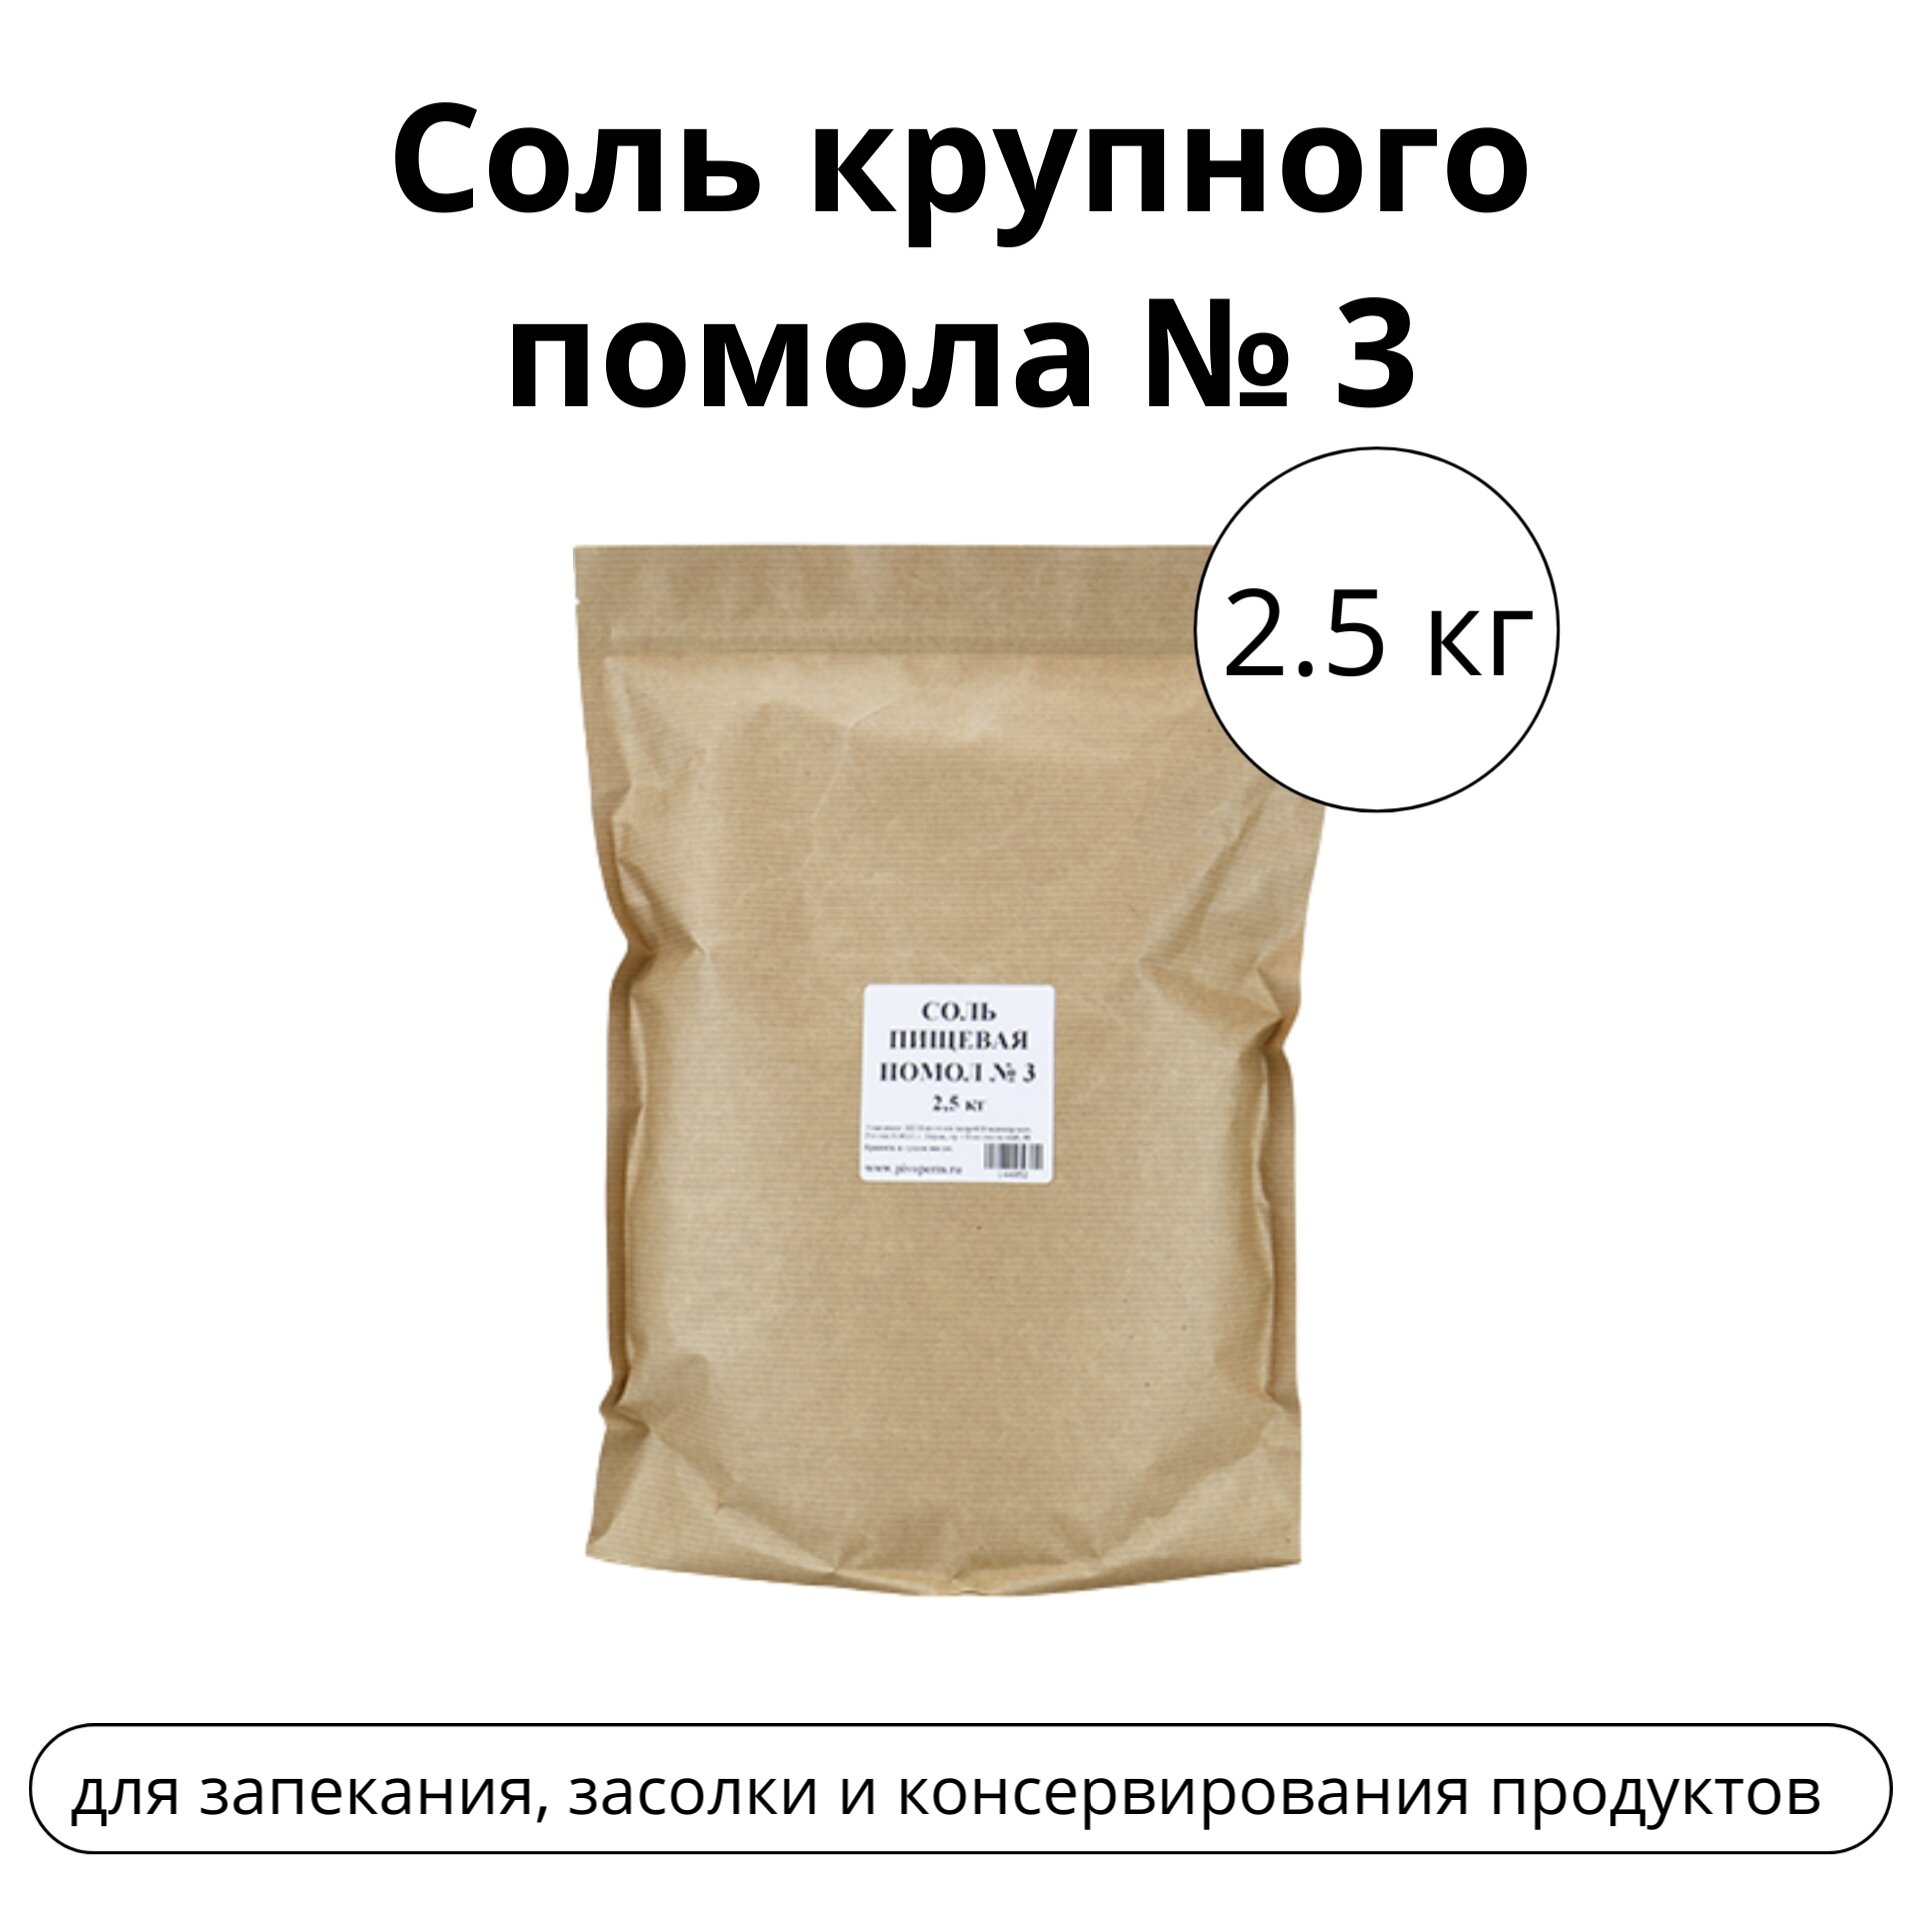 Соль крупного помола № 3 (2,5 кг)